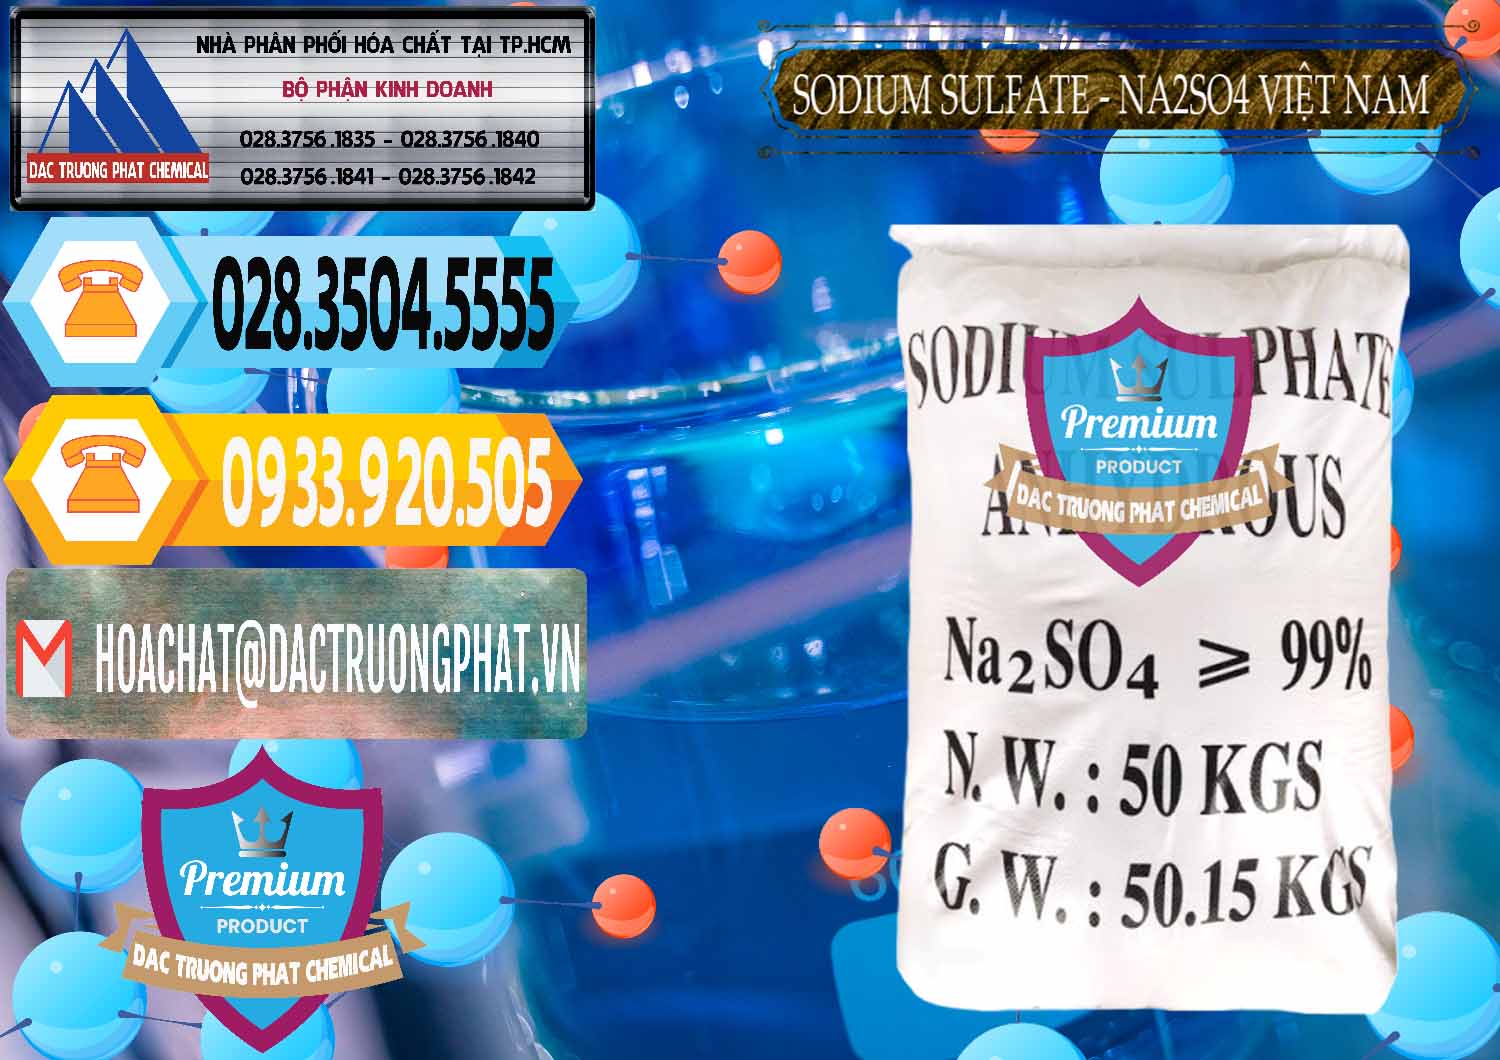 Cty chuyên kinh doanh ( bán ) Sodium Sulphate - Muối Sunfat Na2SO4 Việt Nam - 0355 - Nơi chuyên bán và cung cấp hóa chất tại TP.HCM - hoachattayrua.net